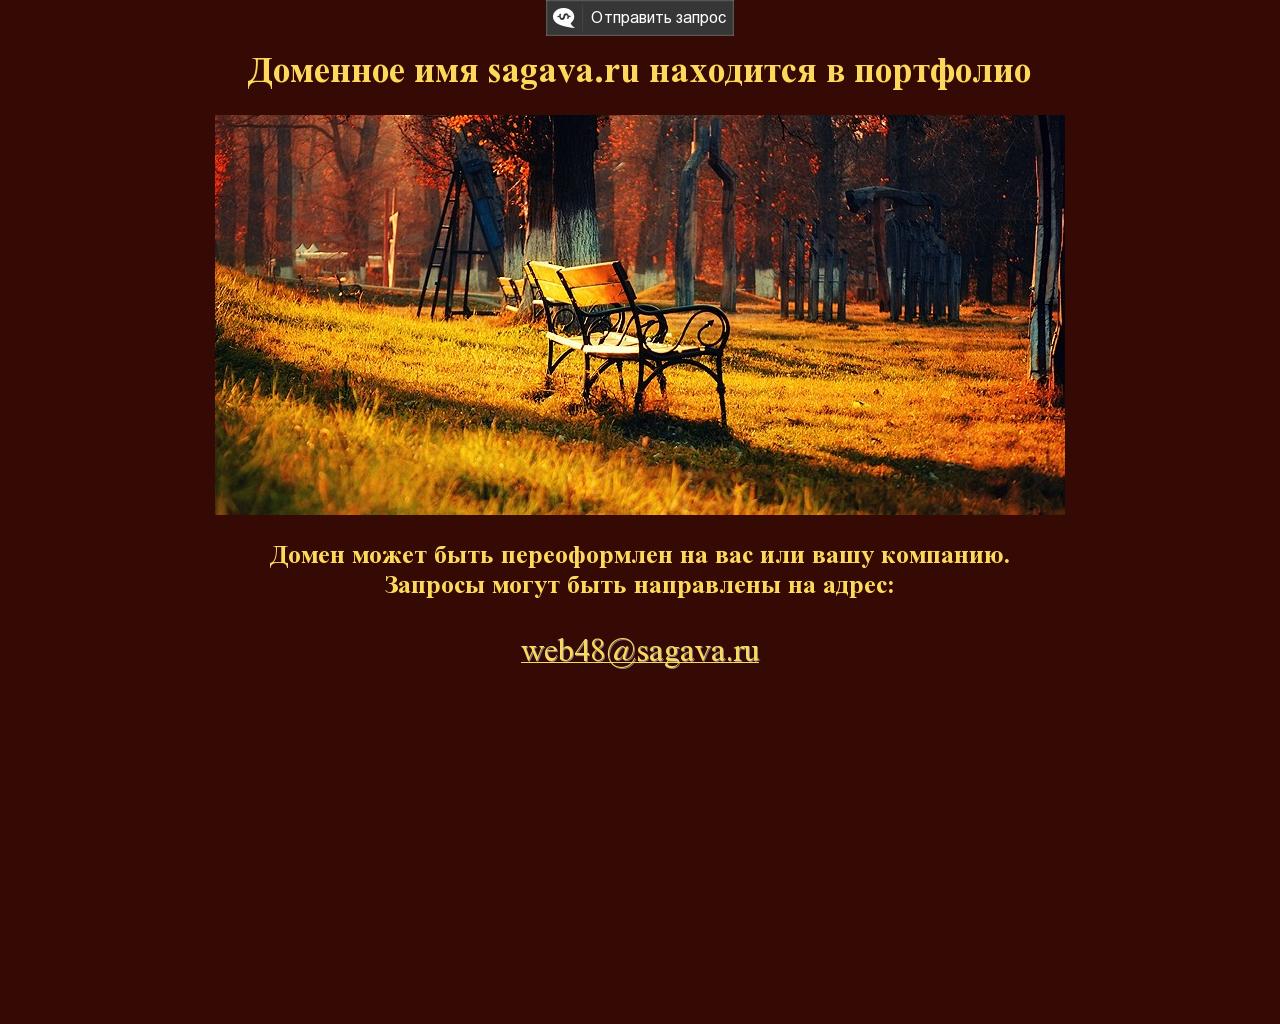 Изображение сайта sagava.ru в разрешении 1280x1024